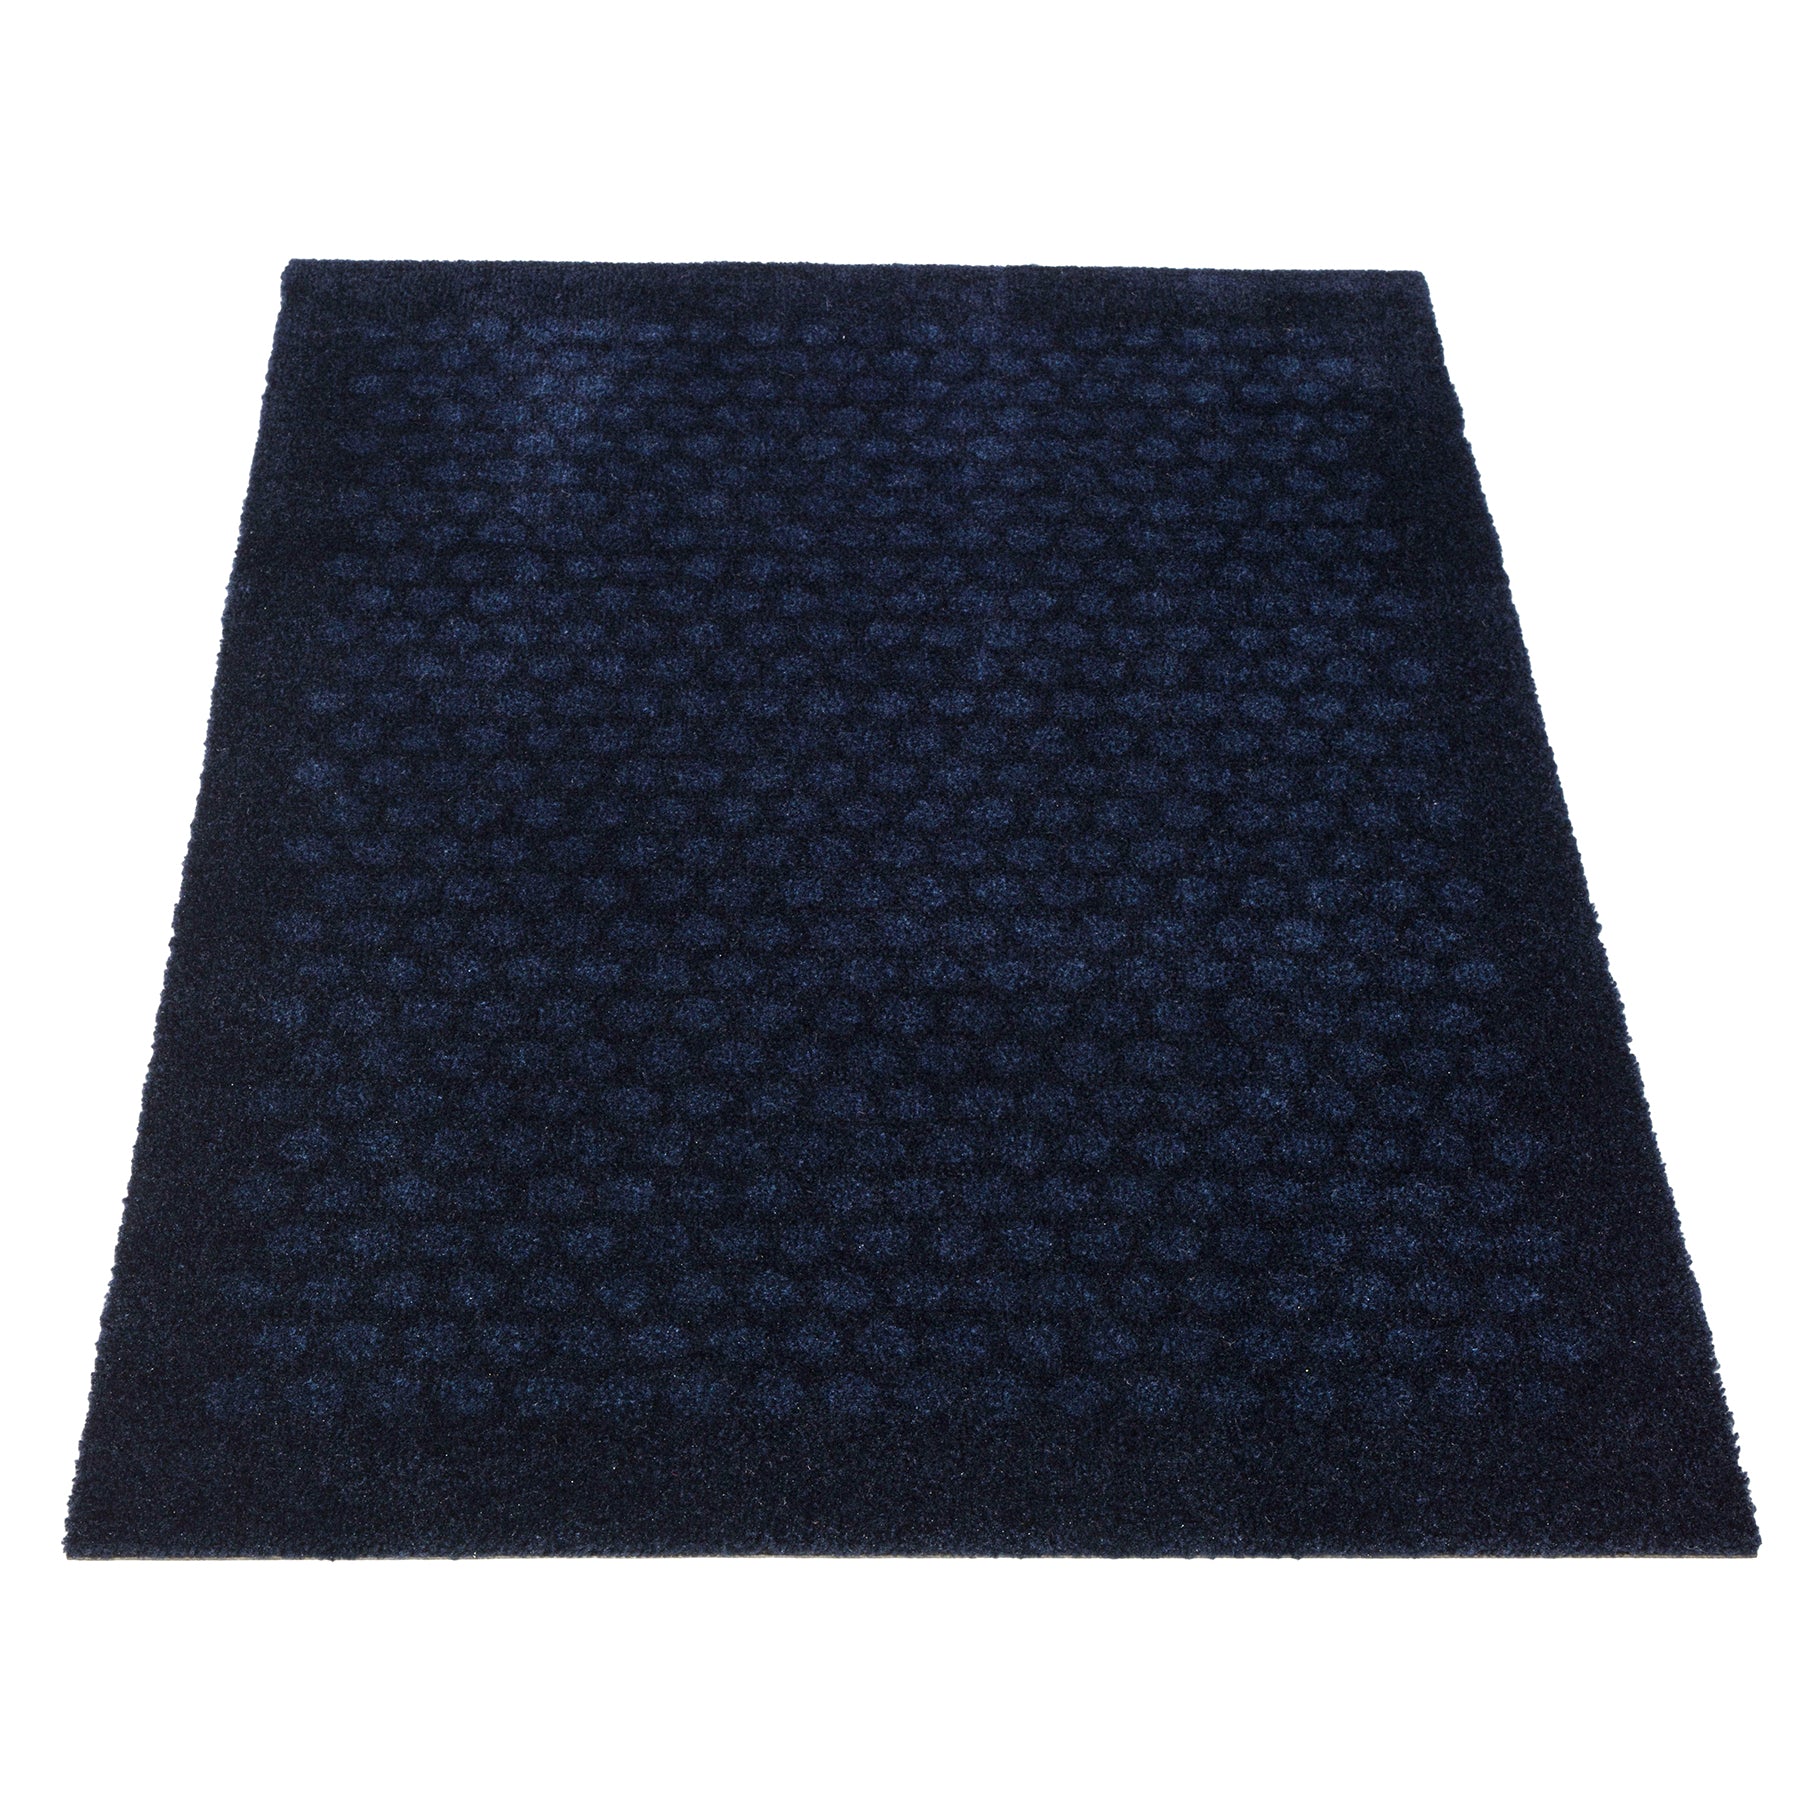 Bodenmatte 60 x 90 cm - Punkte/Blau